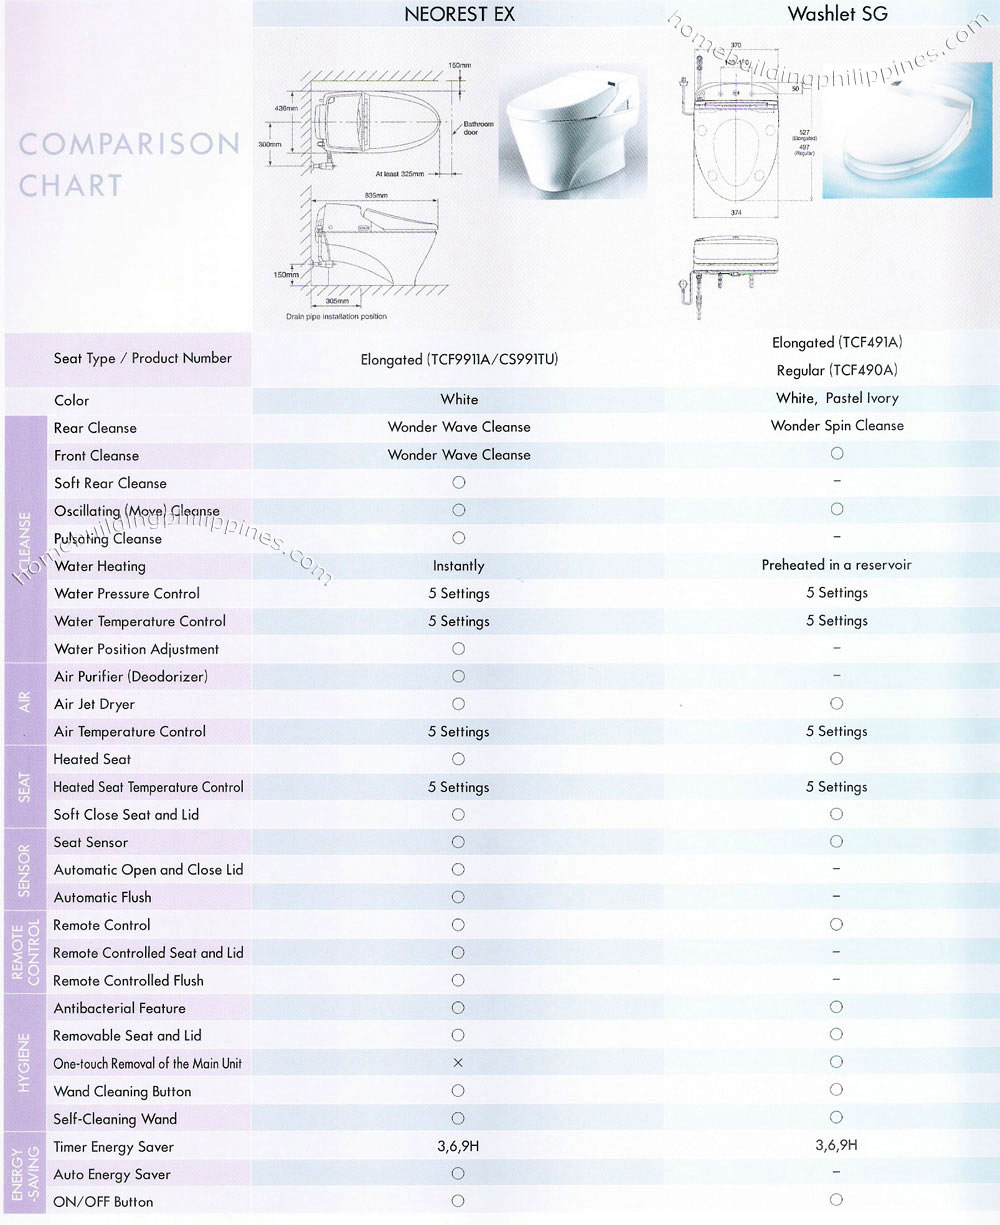 Washlet Comparison Chart